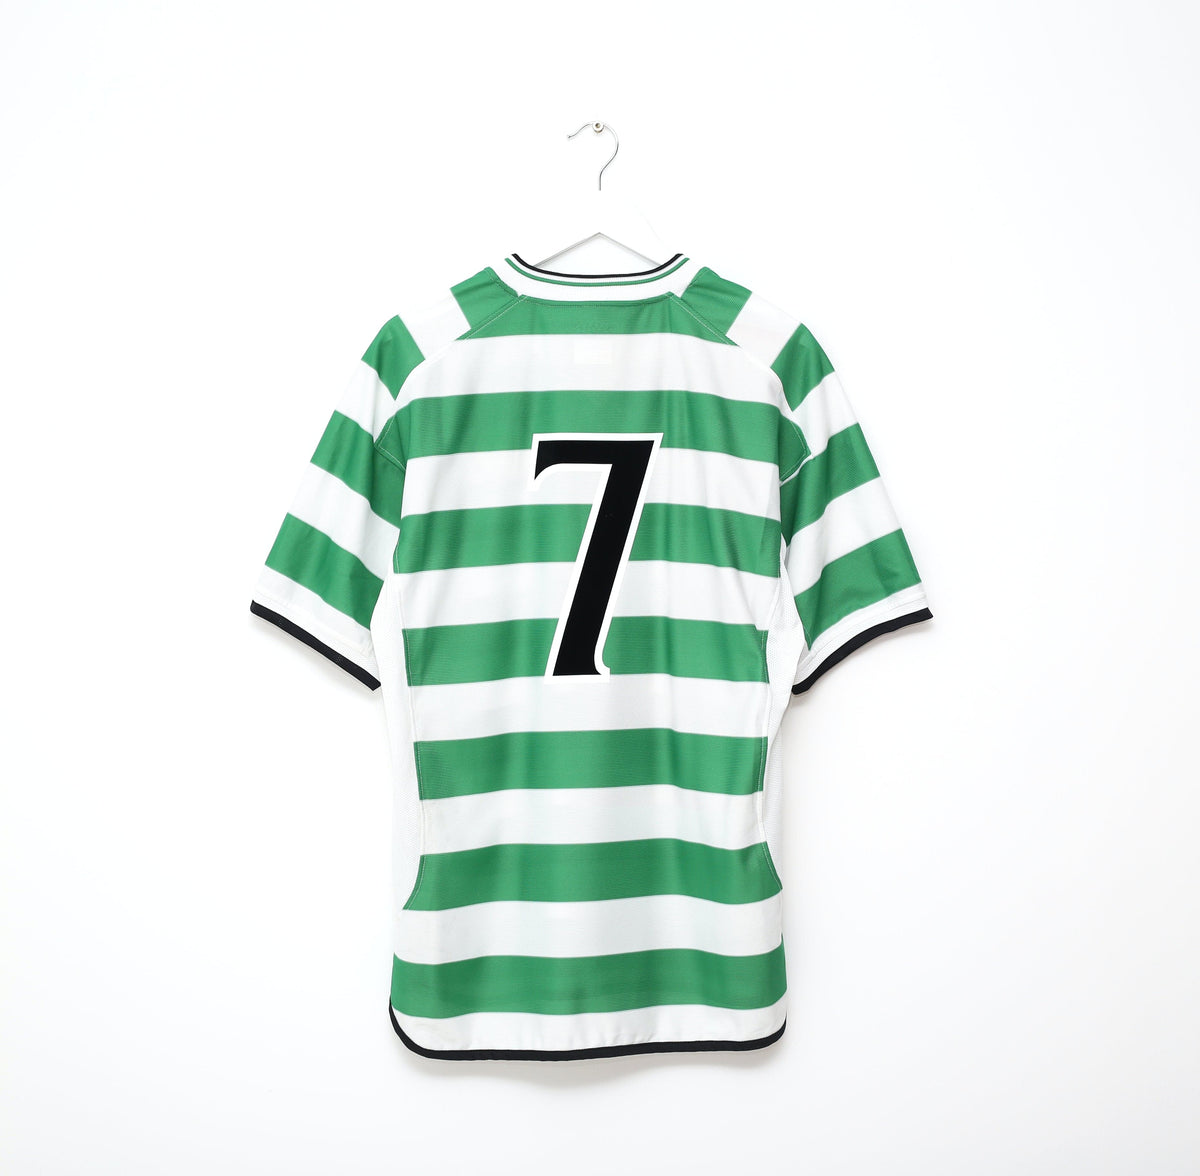 82 84 86 89 Celtic Retro Soccer Jerseys 1991 1992 1998 1999 12 13